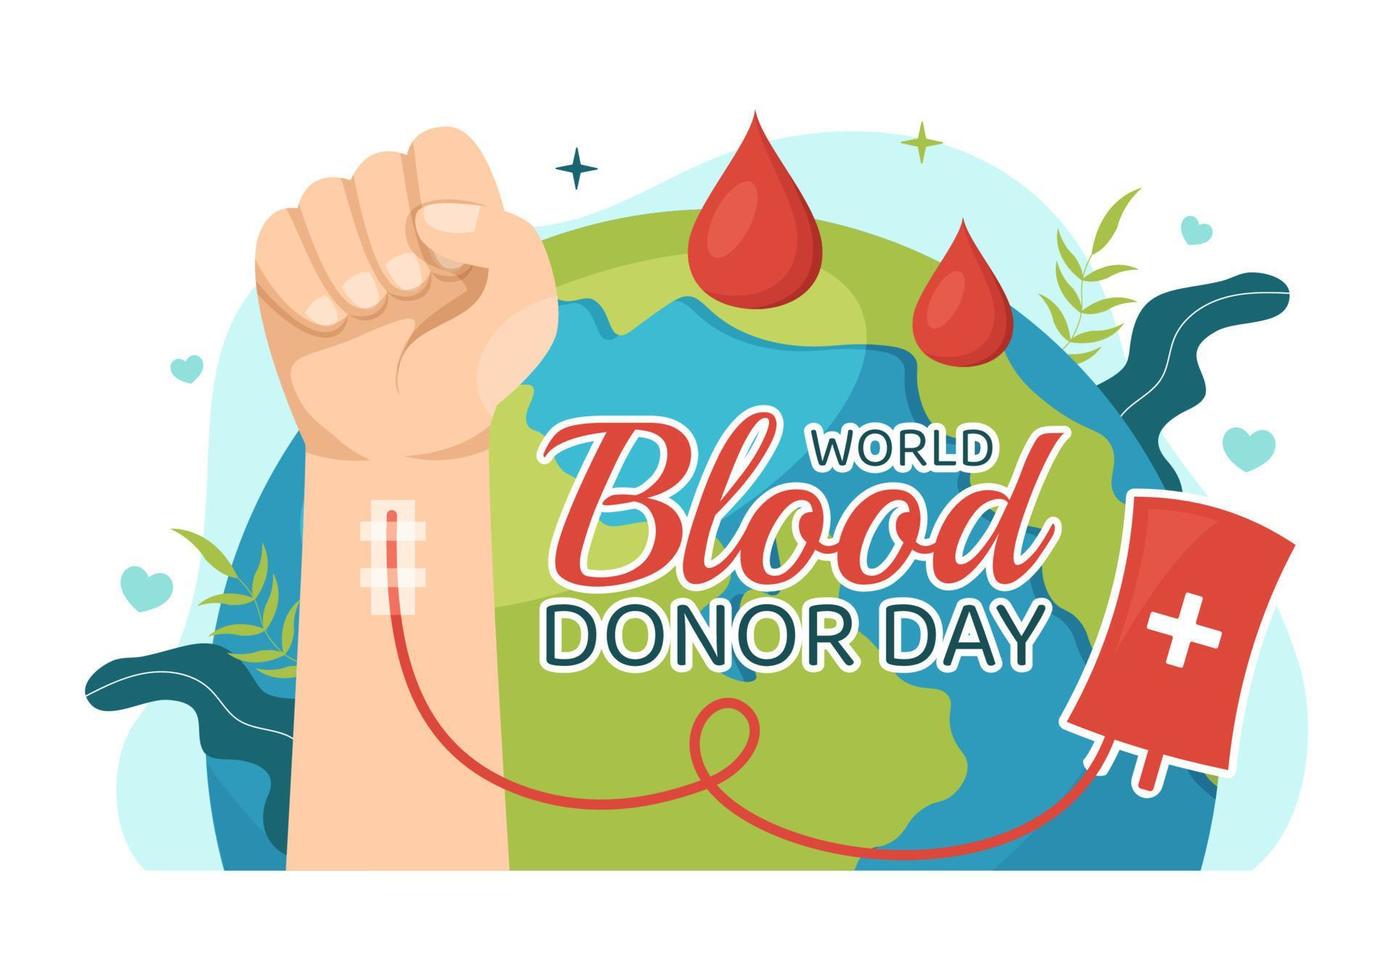 mundo sangre donante día en junio 14 ilustración con humano donado sangres para dar el recipiente en salvar vida plano dibujos animados mano dibujado plantillas vector